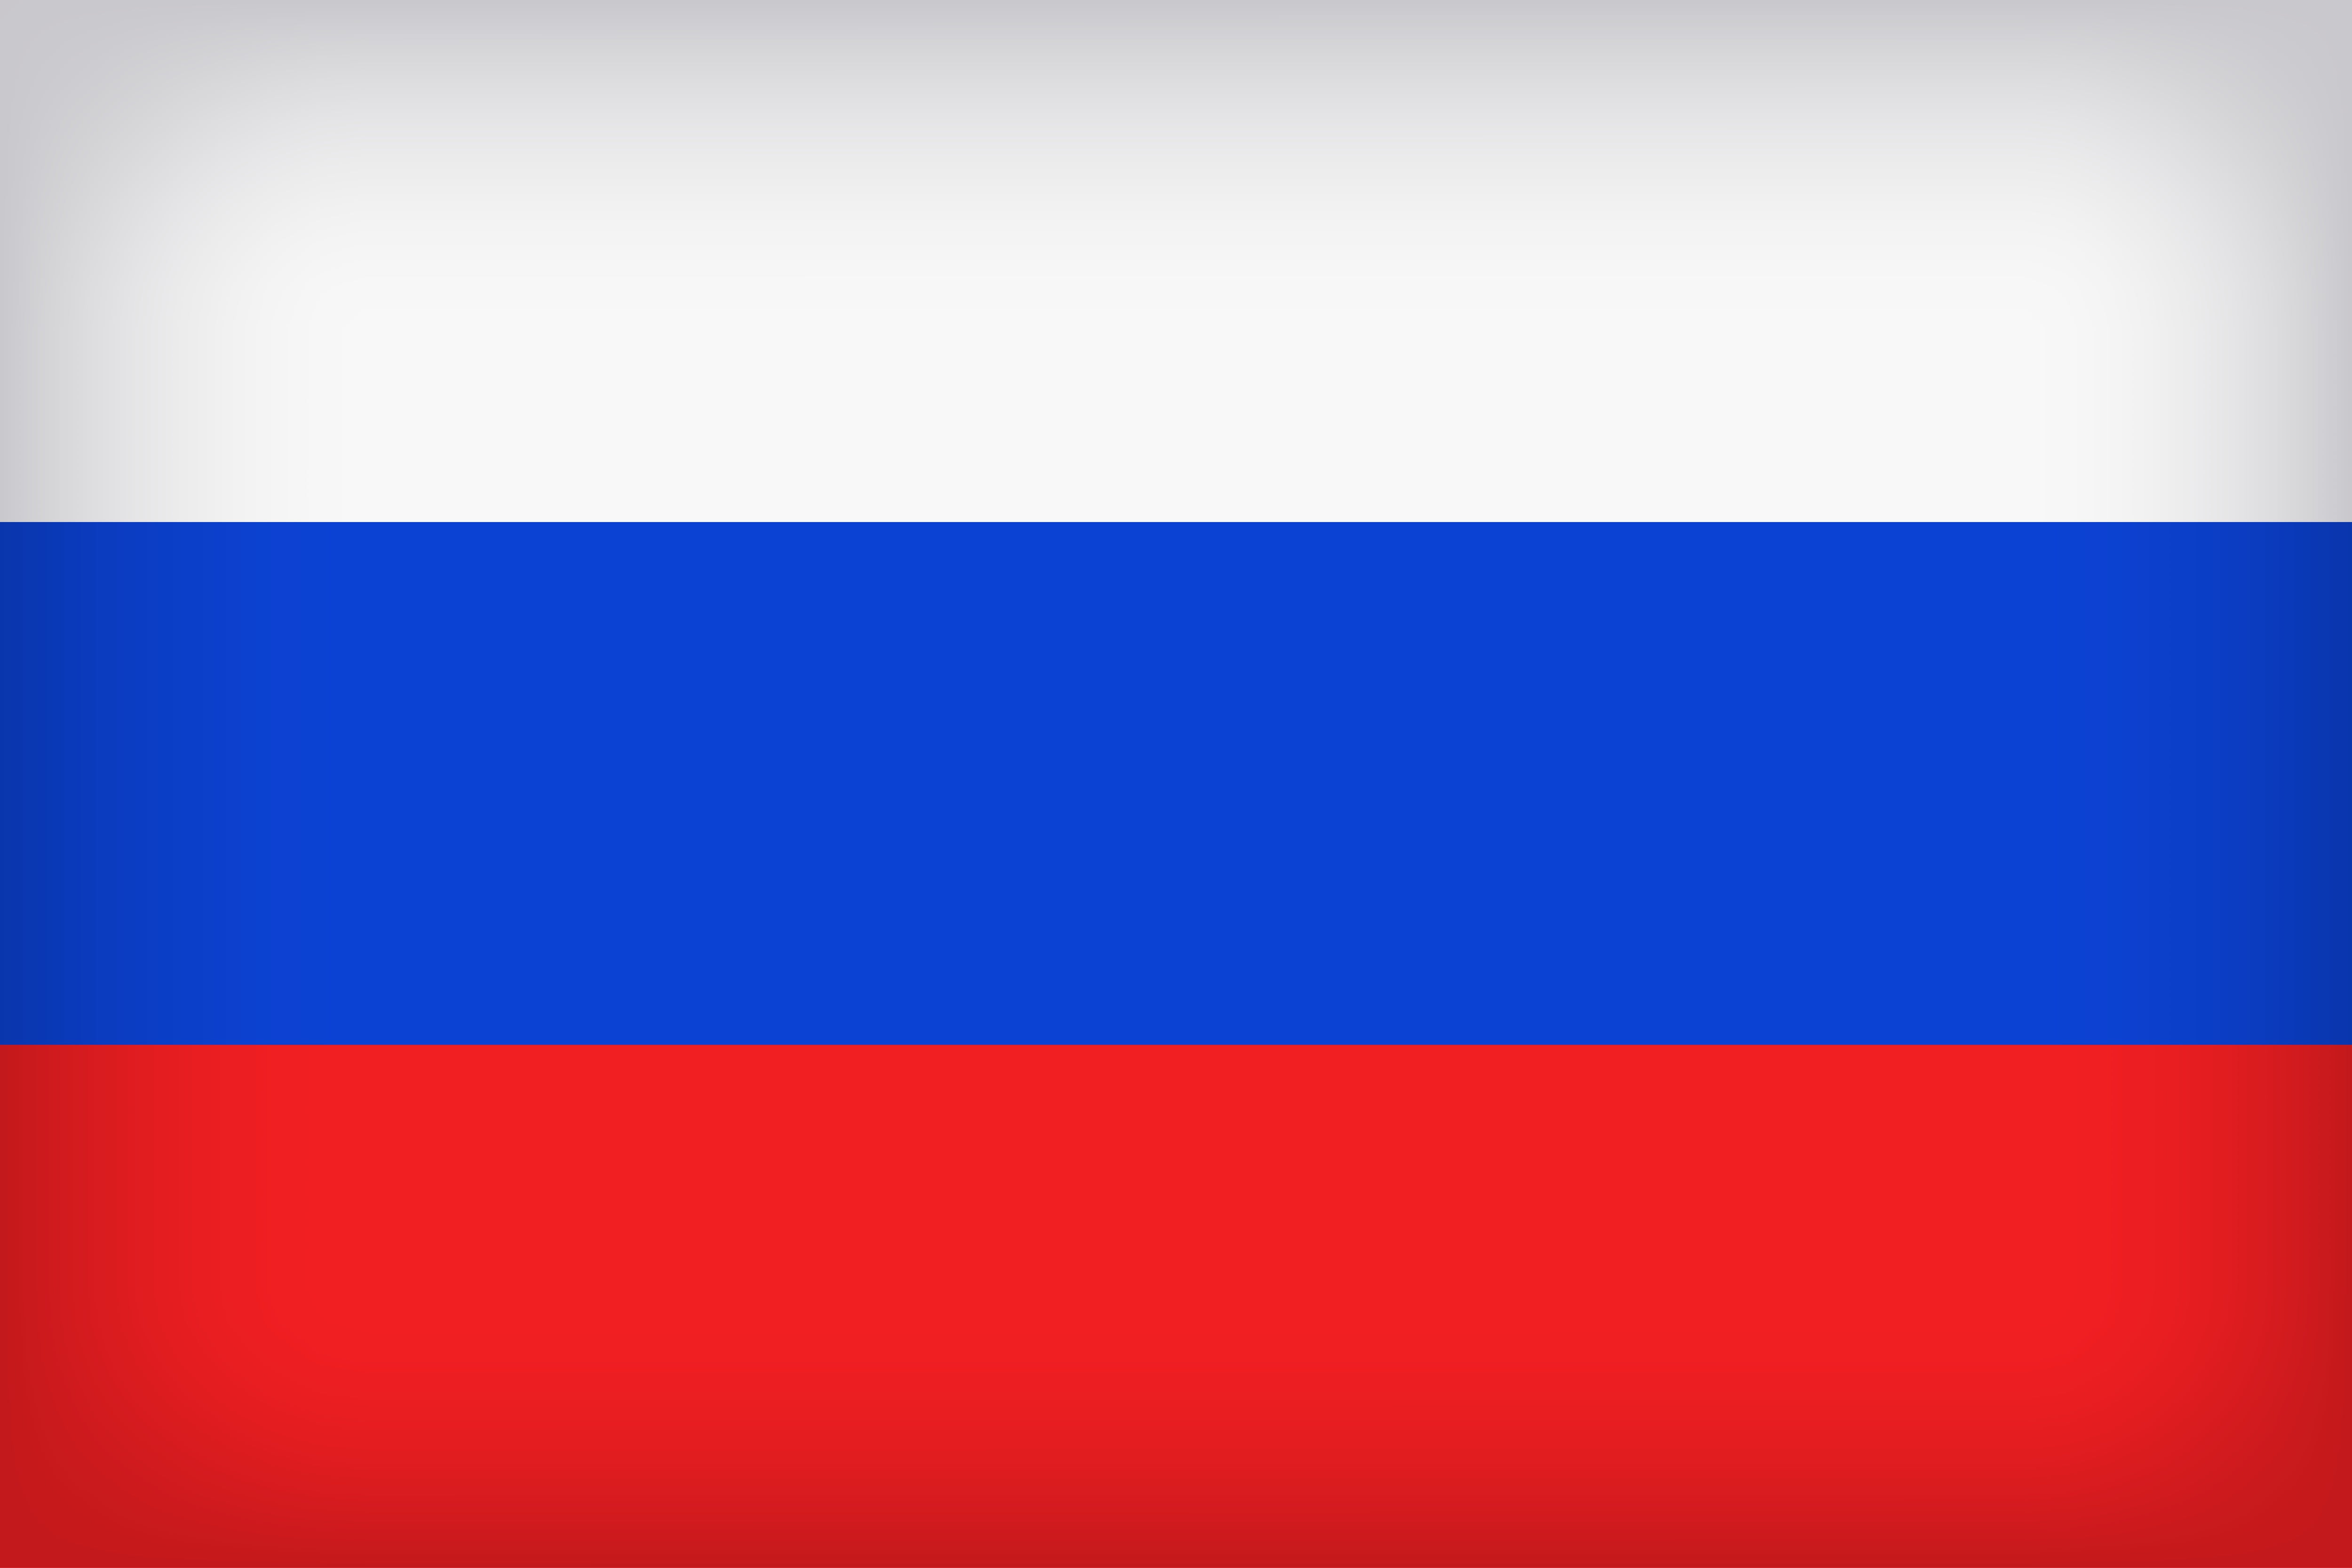 Russia, Flag, Russian, Russian Flag, Flag Of Russia